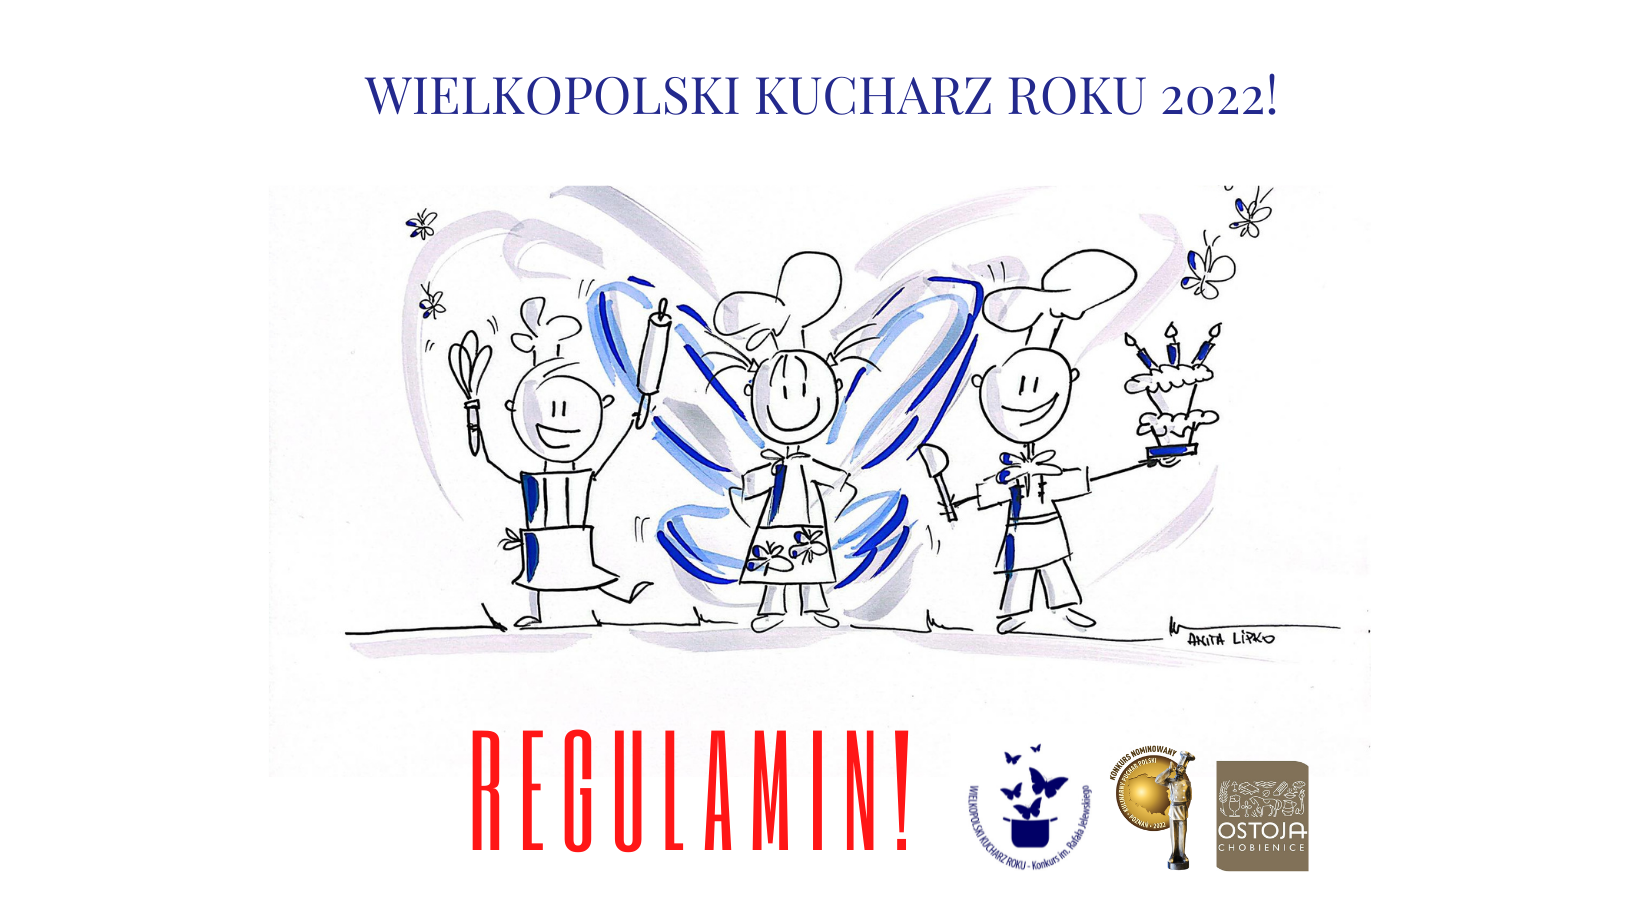 Wielkopolski Kucharz Roku 2022 – zgłoszenia do 29 kwietnia